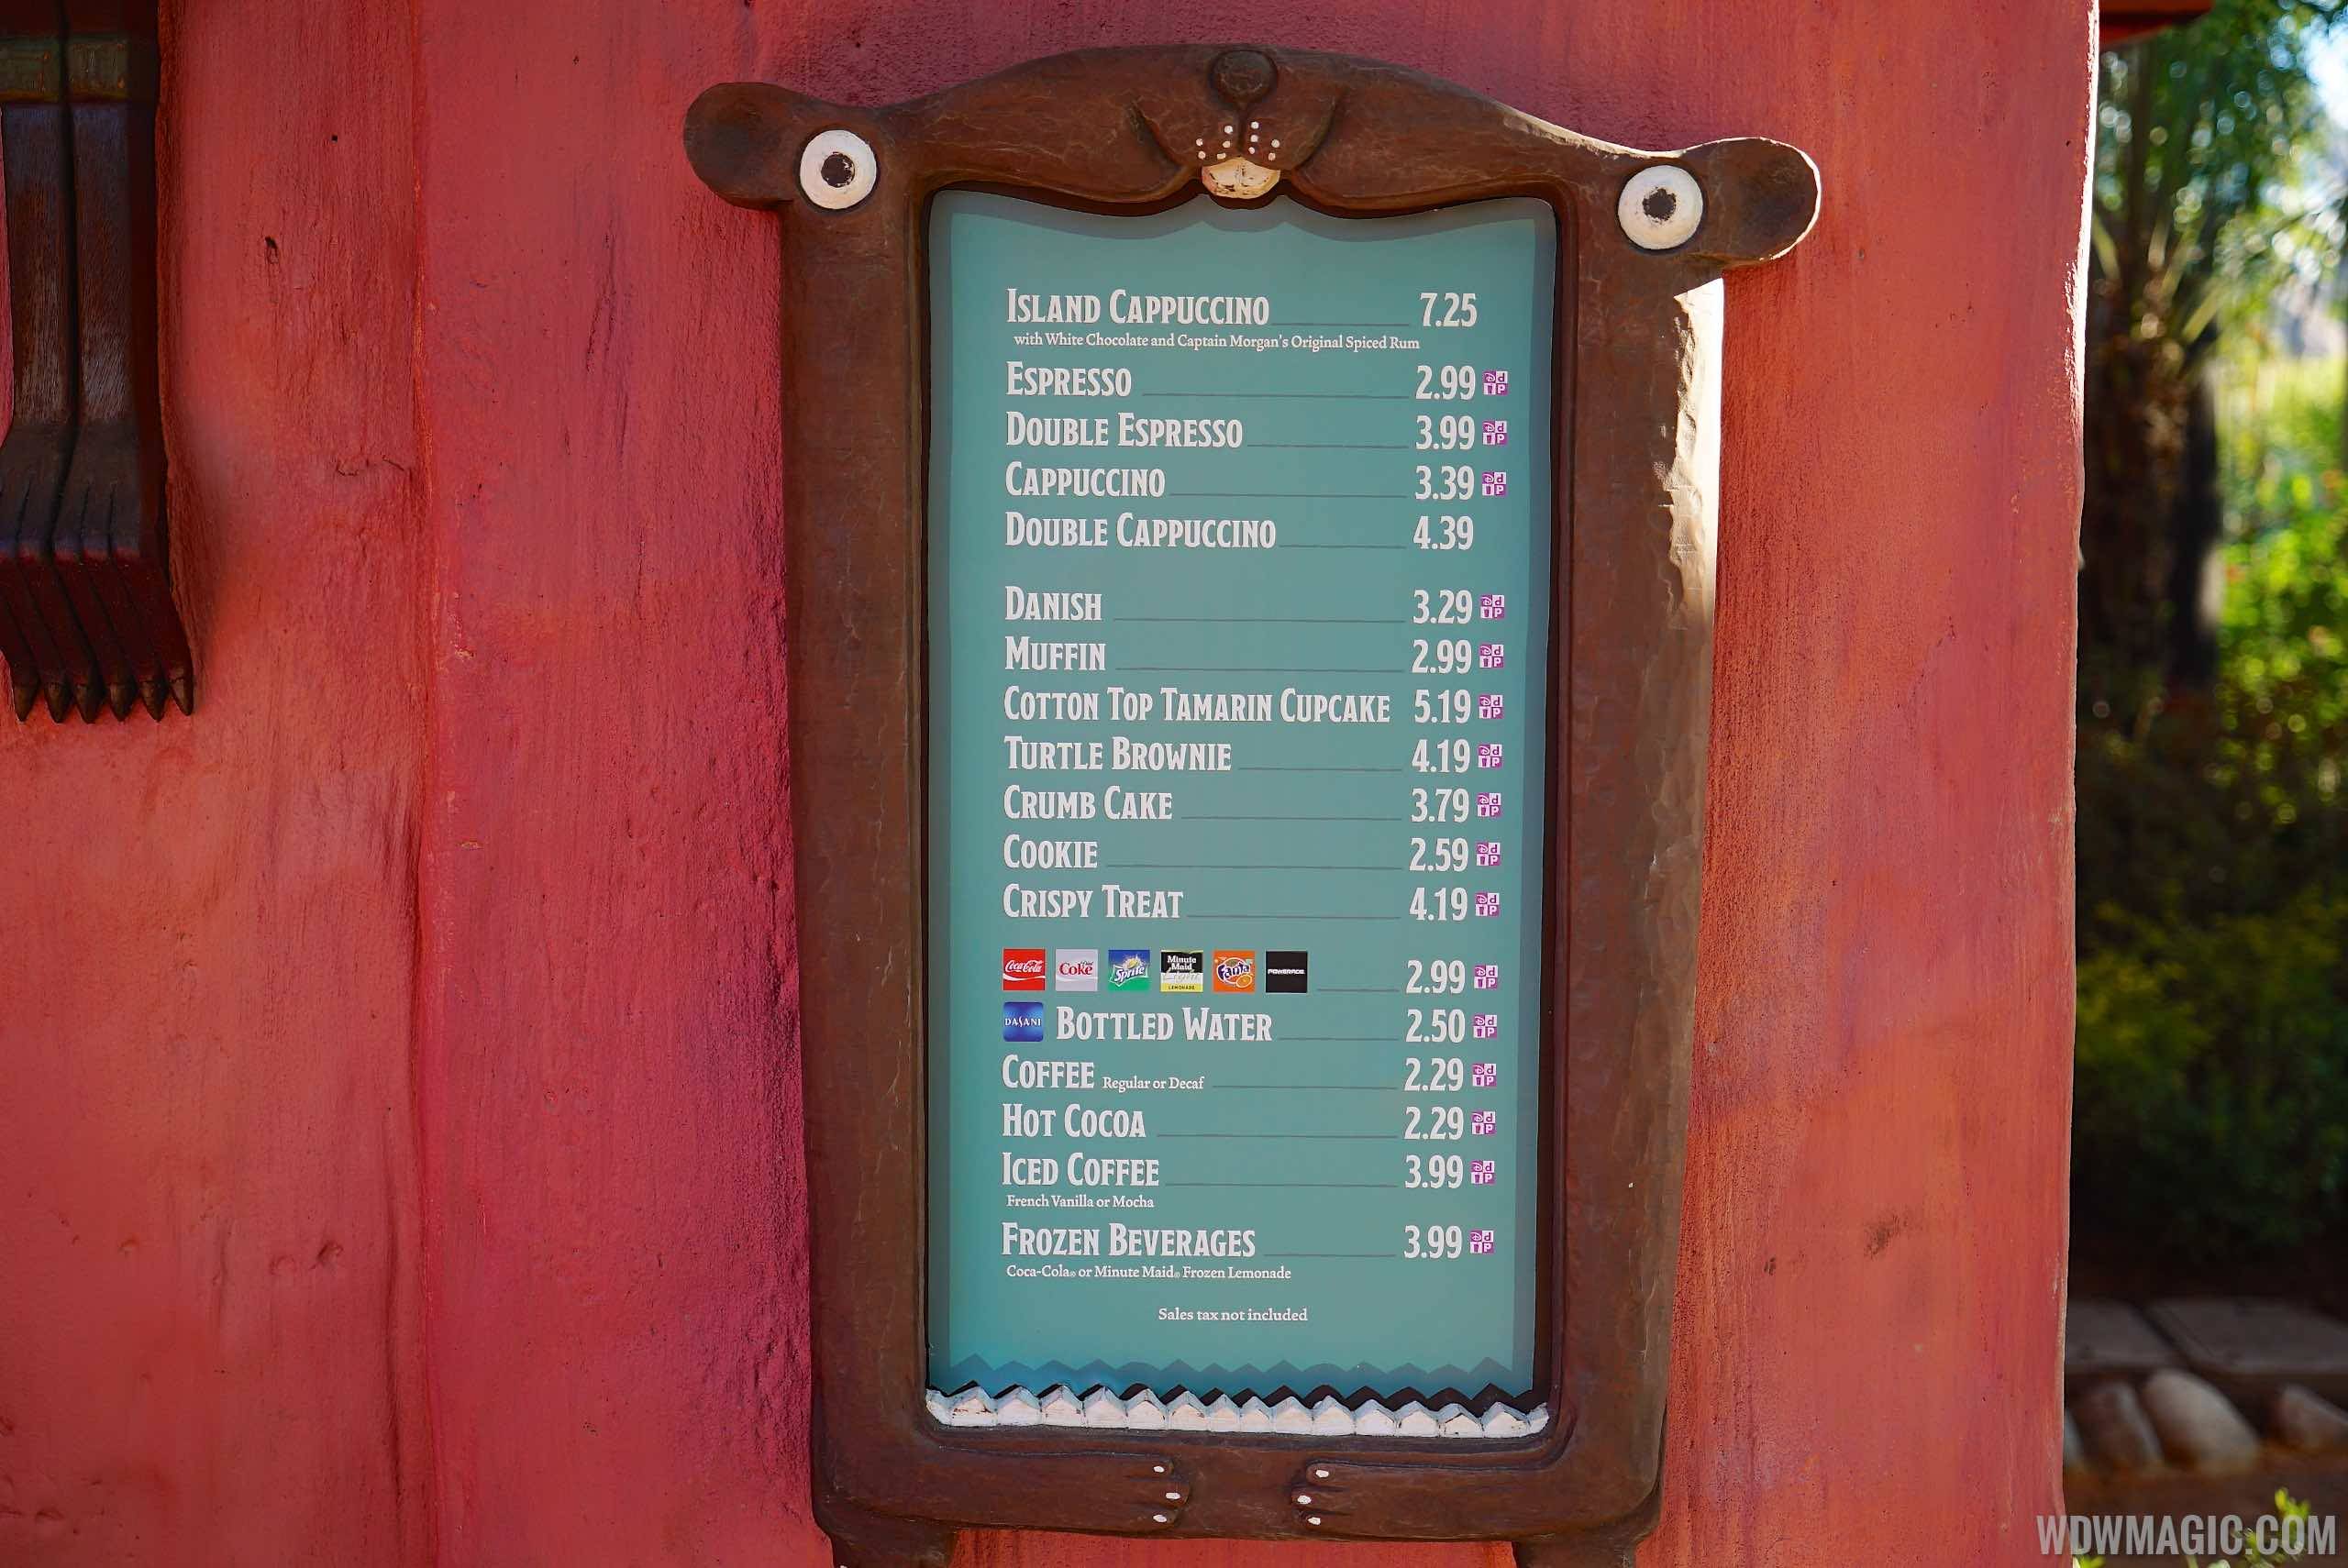 Isle of Java coffee kiosk menu